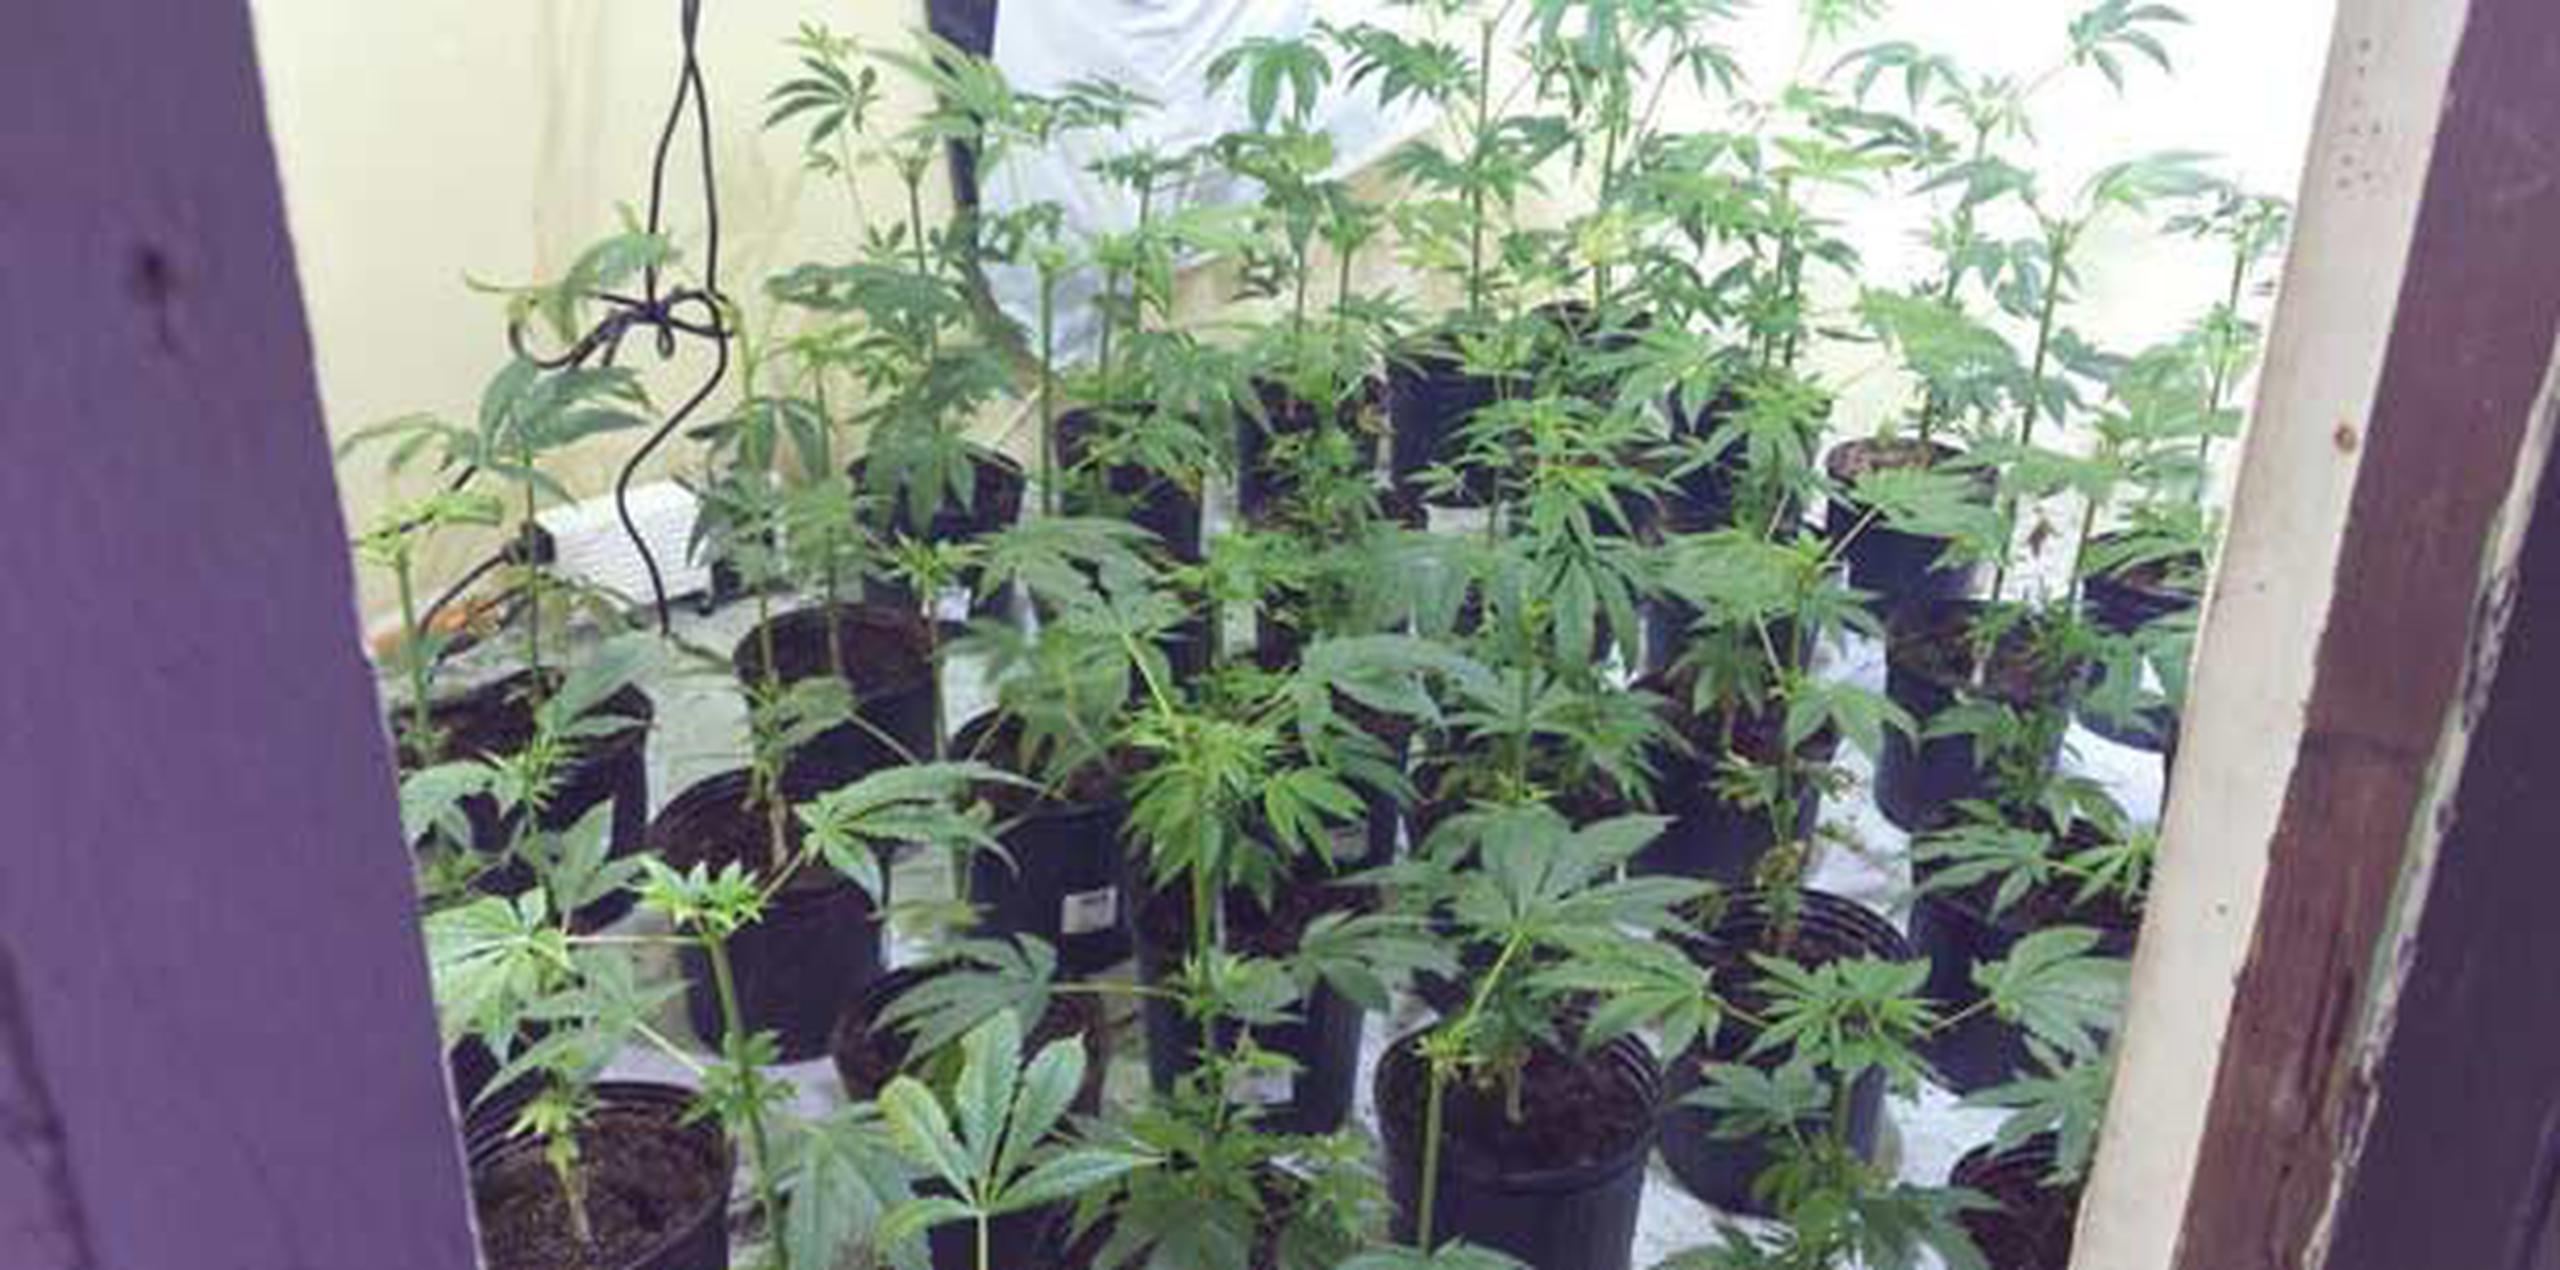 En el invernadero habían más de 60 matas de marihuana. (Suministrada)